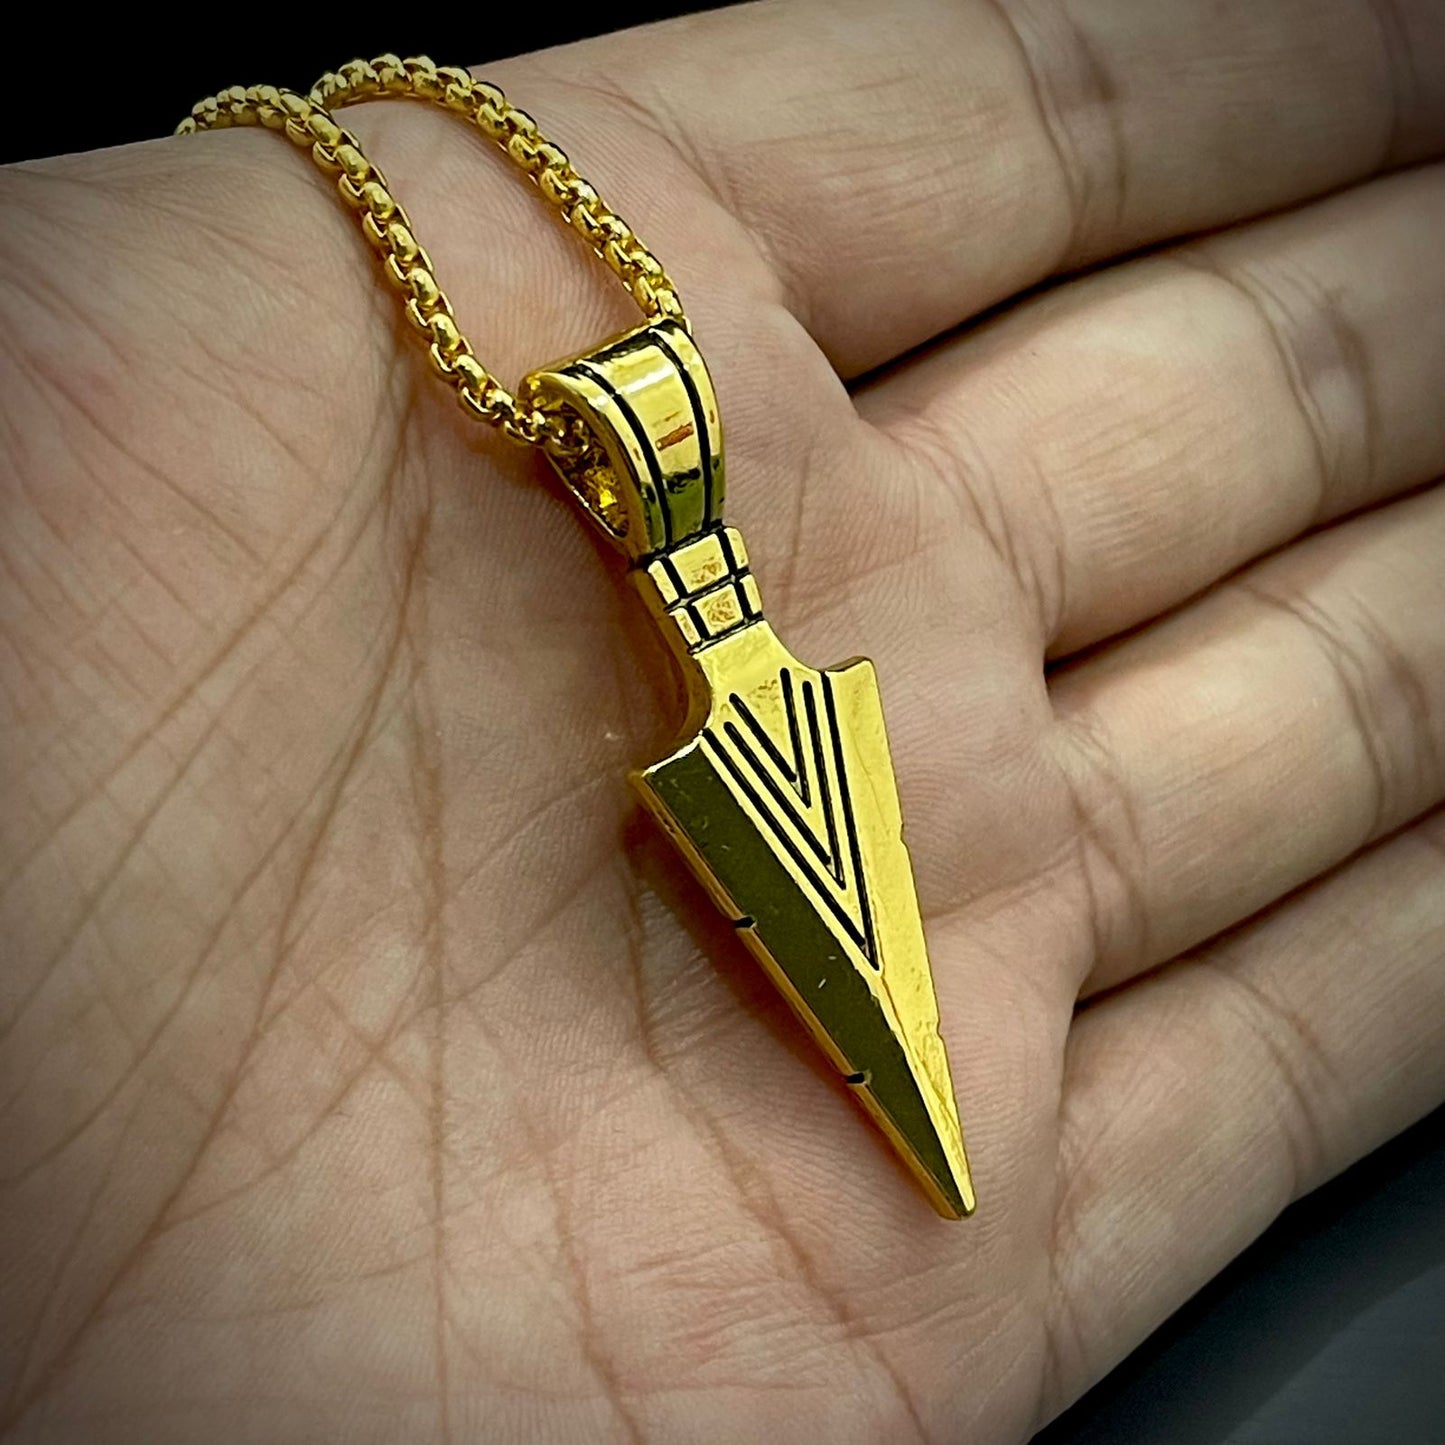 100% Stainless Steel Golden Arrow Pendant Necklace For Men online in Pakistan